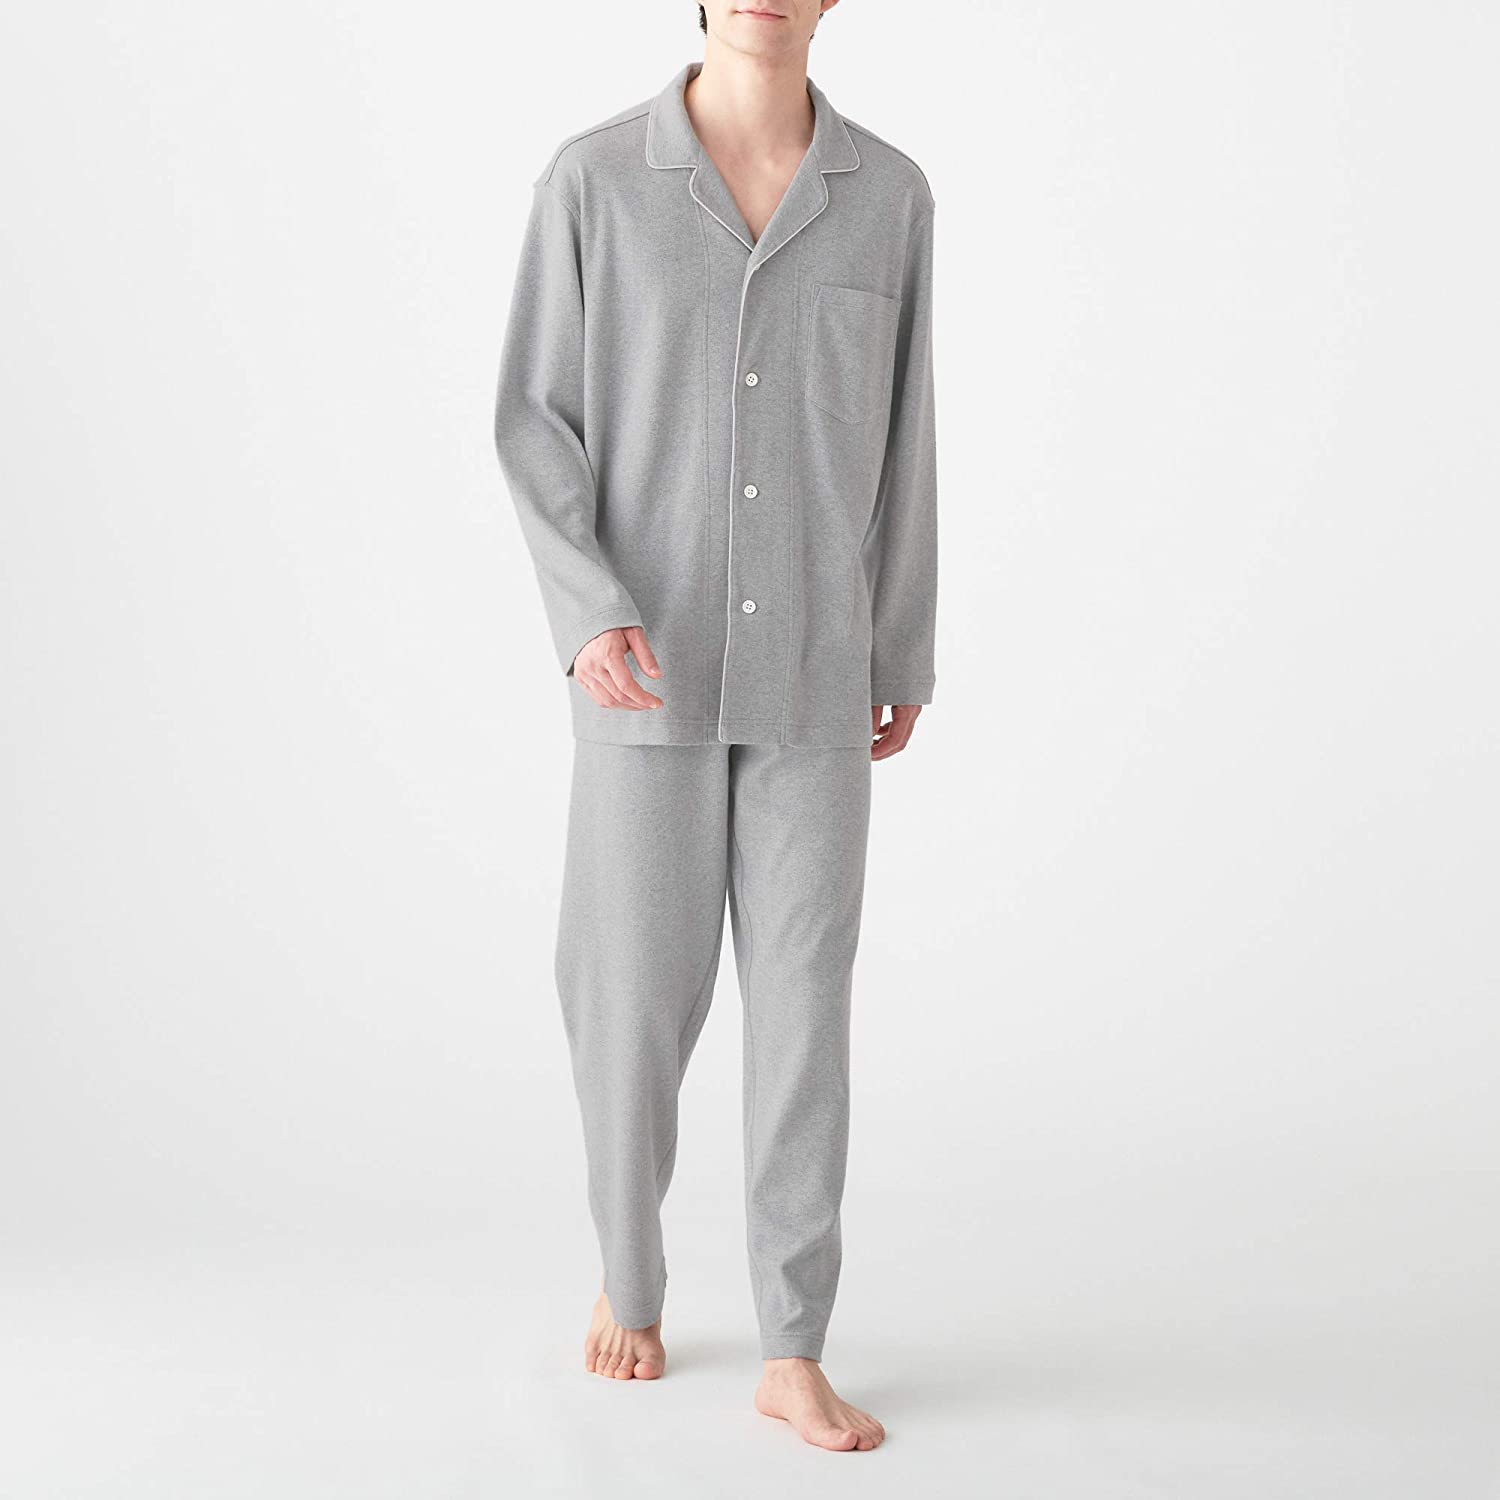 MUJI 無印良品 Men's pajamas M size Gray without side seams Sleepwear Japan ...